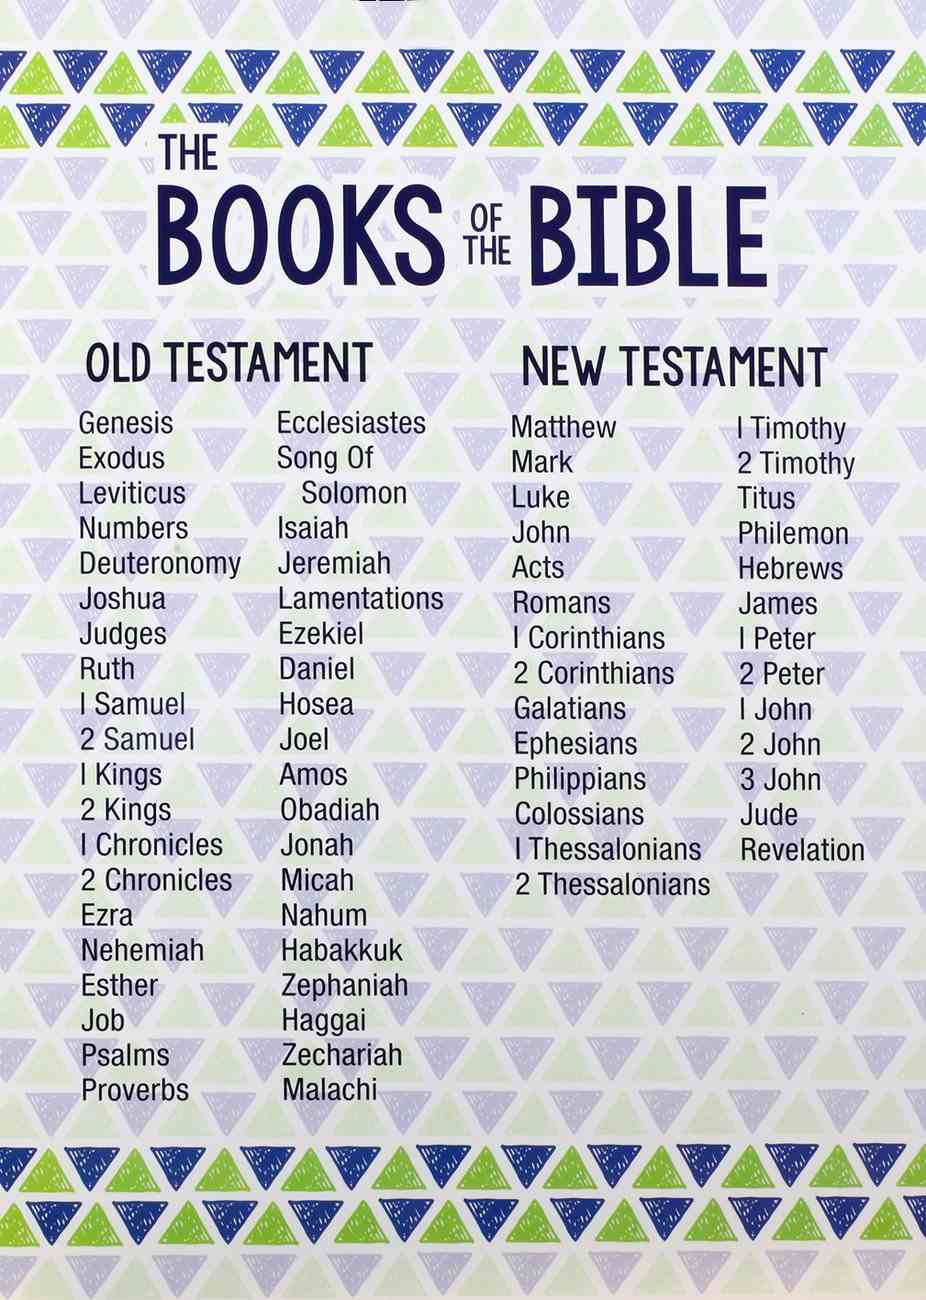 Books Of The Bible Printable